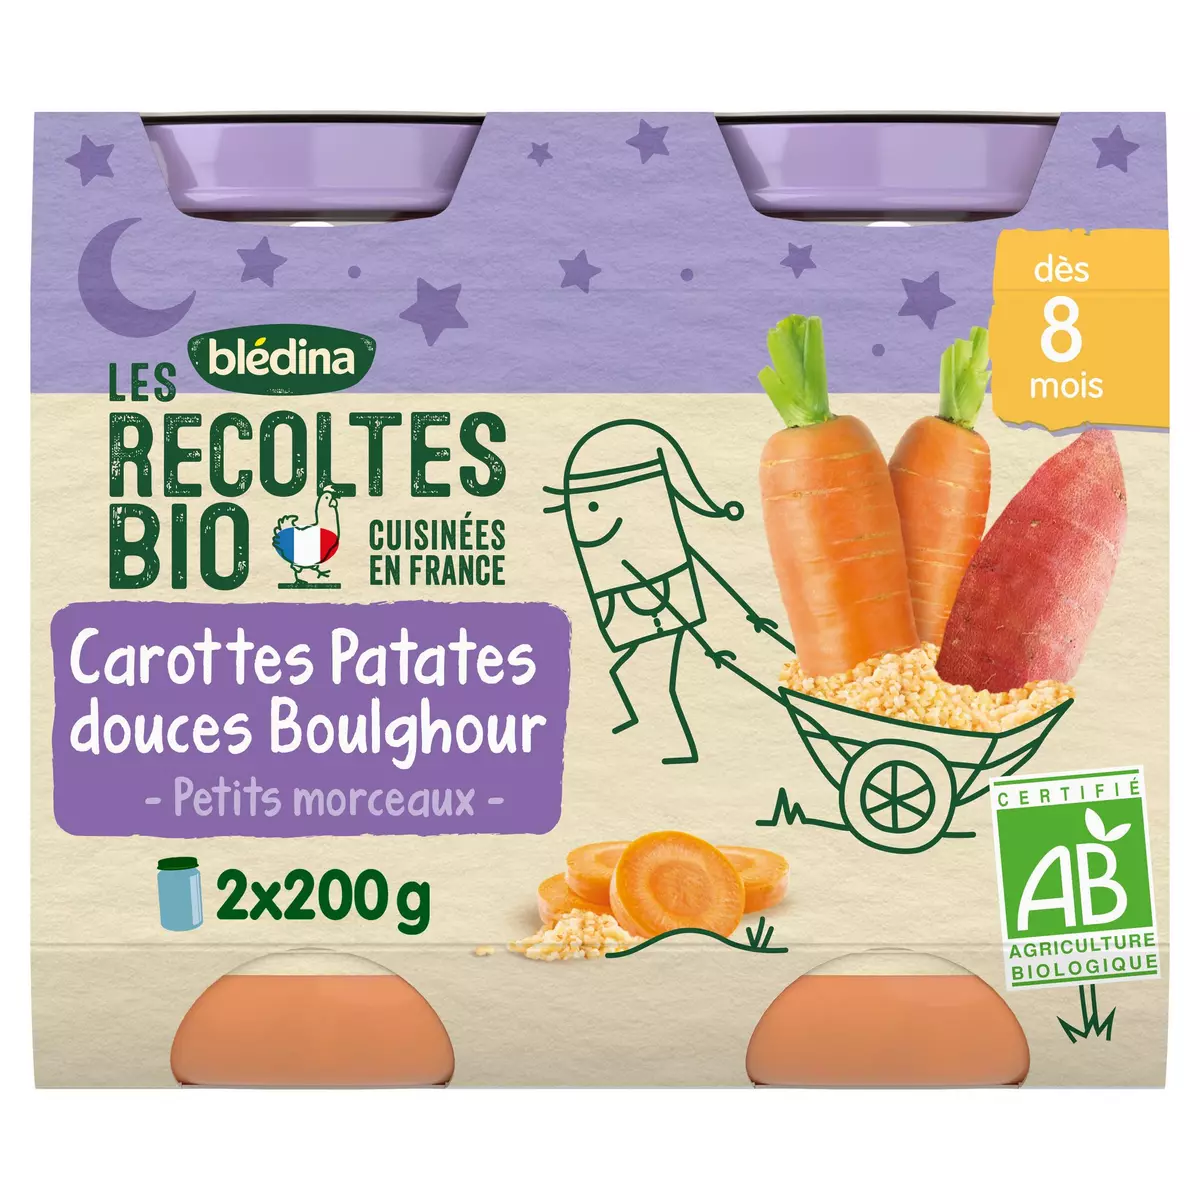 BLEDINA Petits Pots carottes patates douces boulghour bio dès 8 mois 2x200g